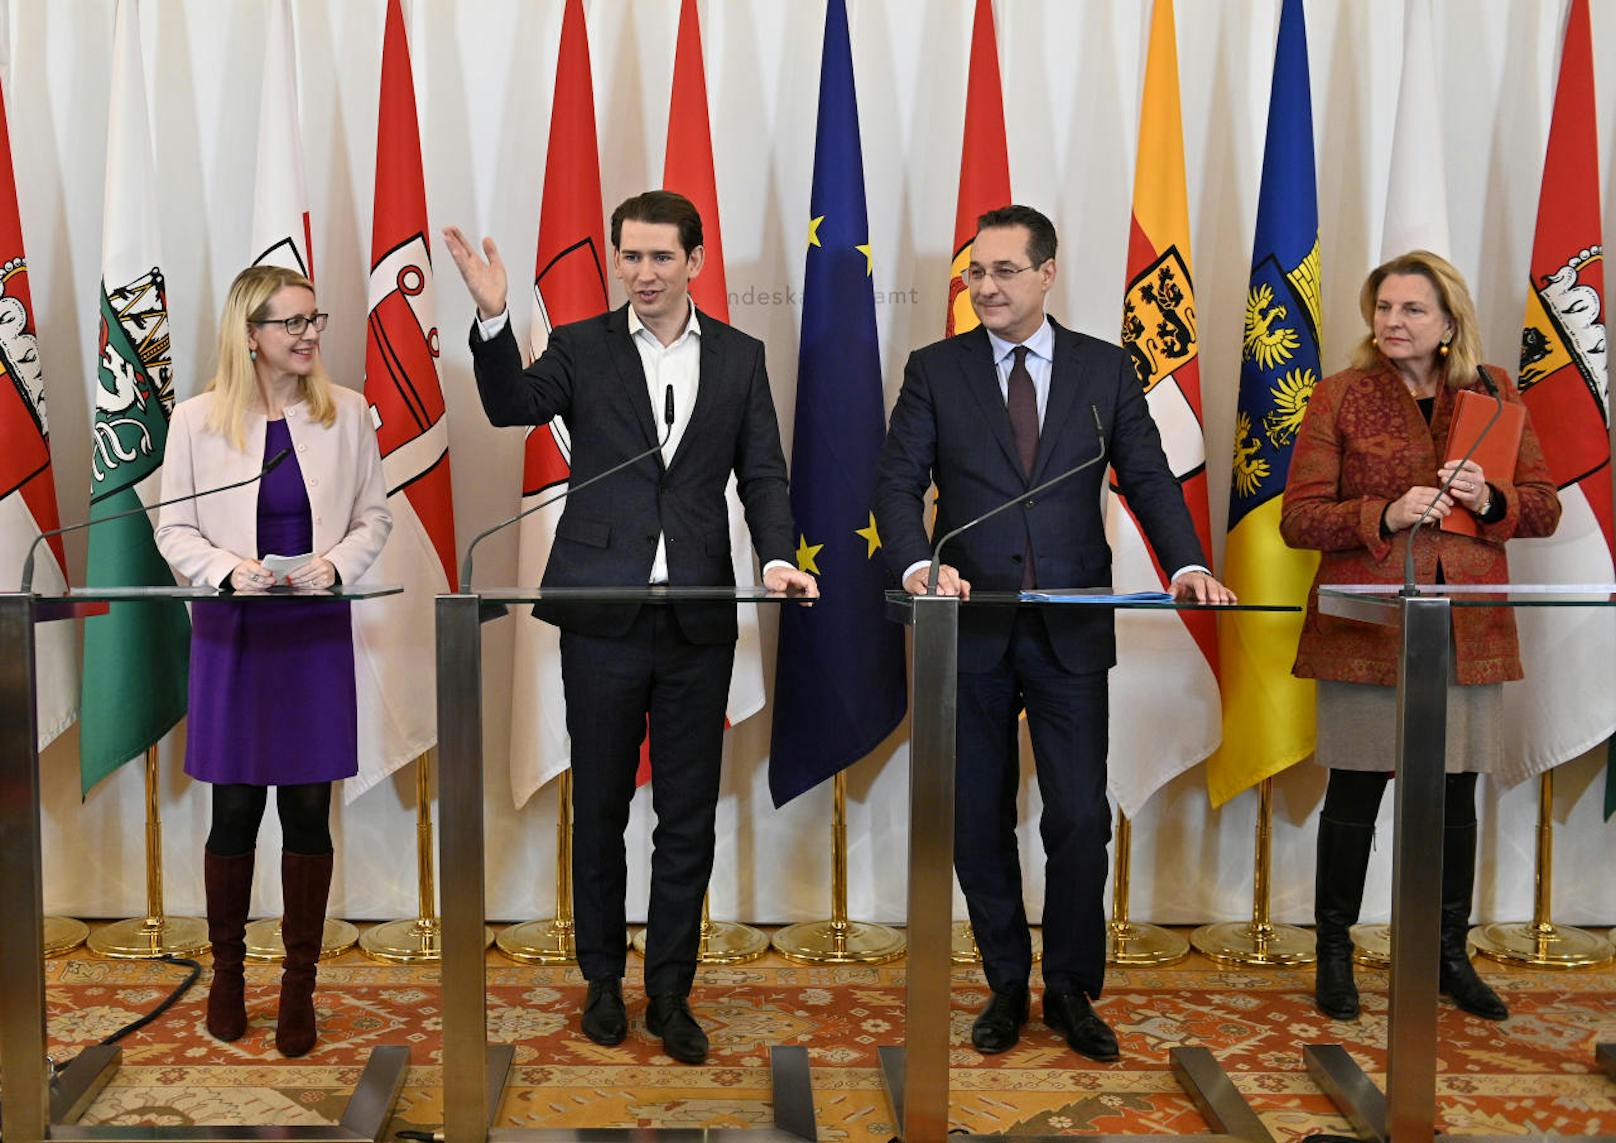 Wirtschaftsministerin Margarete Schramböck (ÖVP), Bundeskanzler Sebastian Kurz (ÖVP), Vizekanzler Heinz Christian Strache (FPÖ), Außenministerin Karin Kneissl (FPÖ)